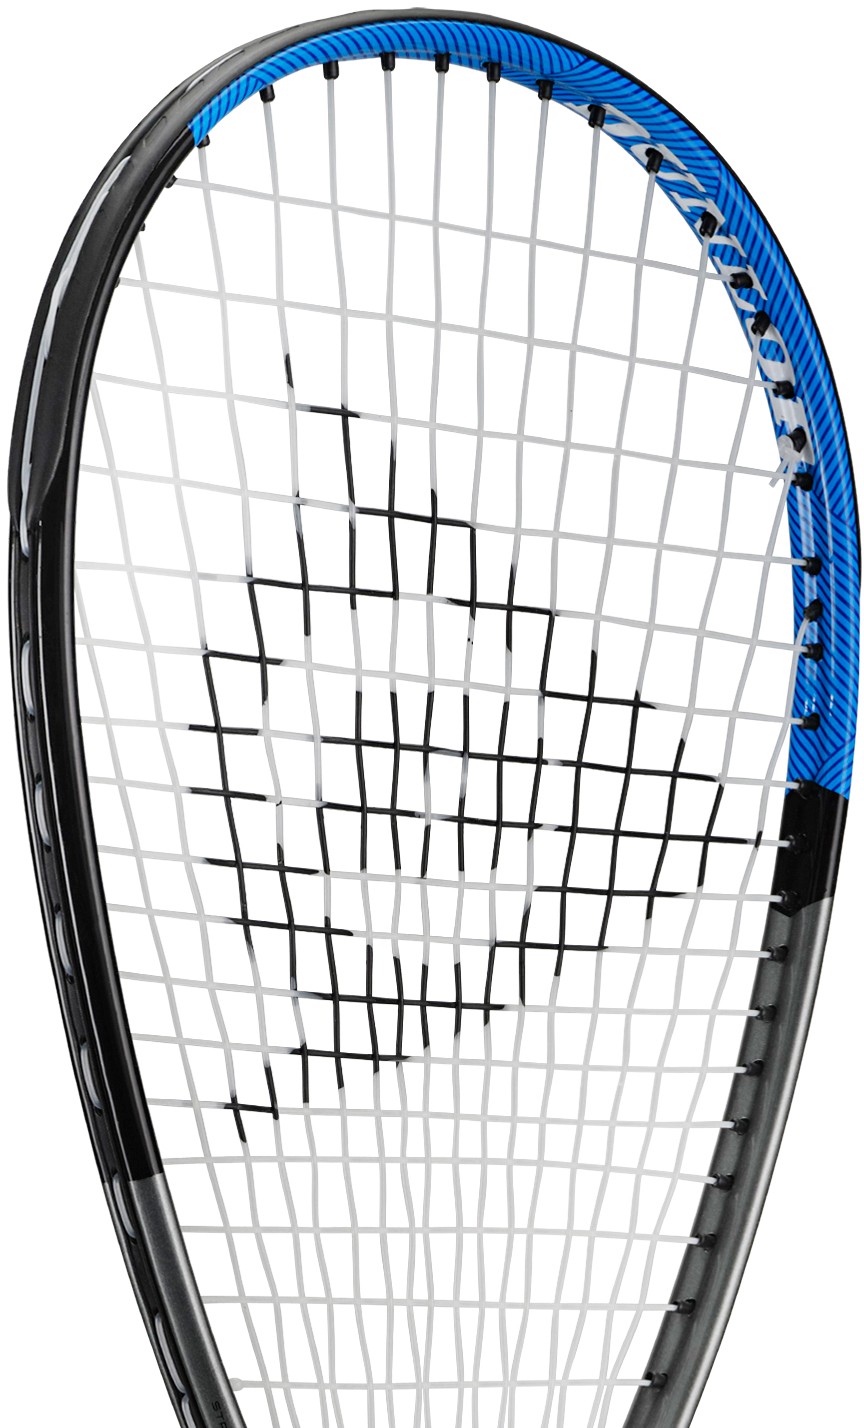 Squash racquet